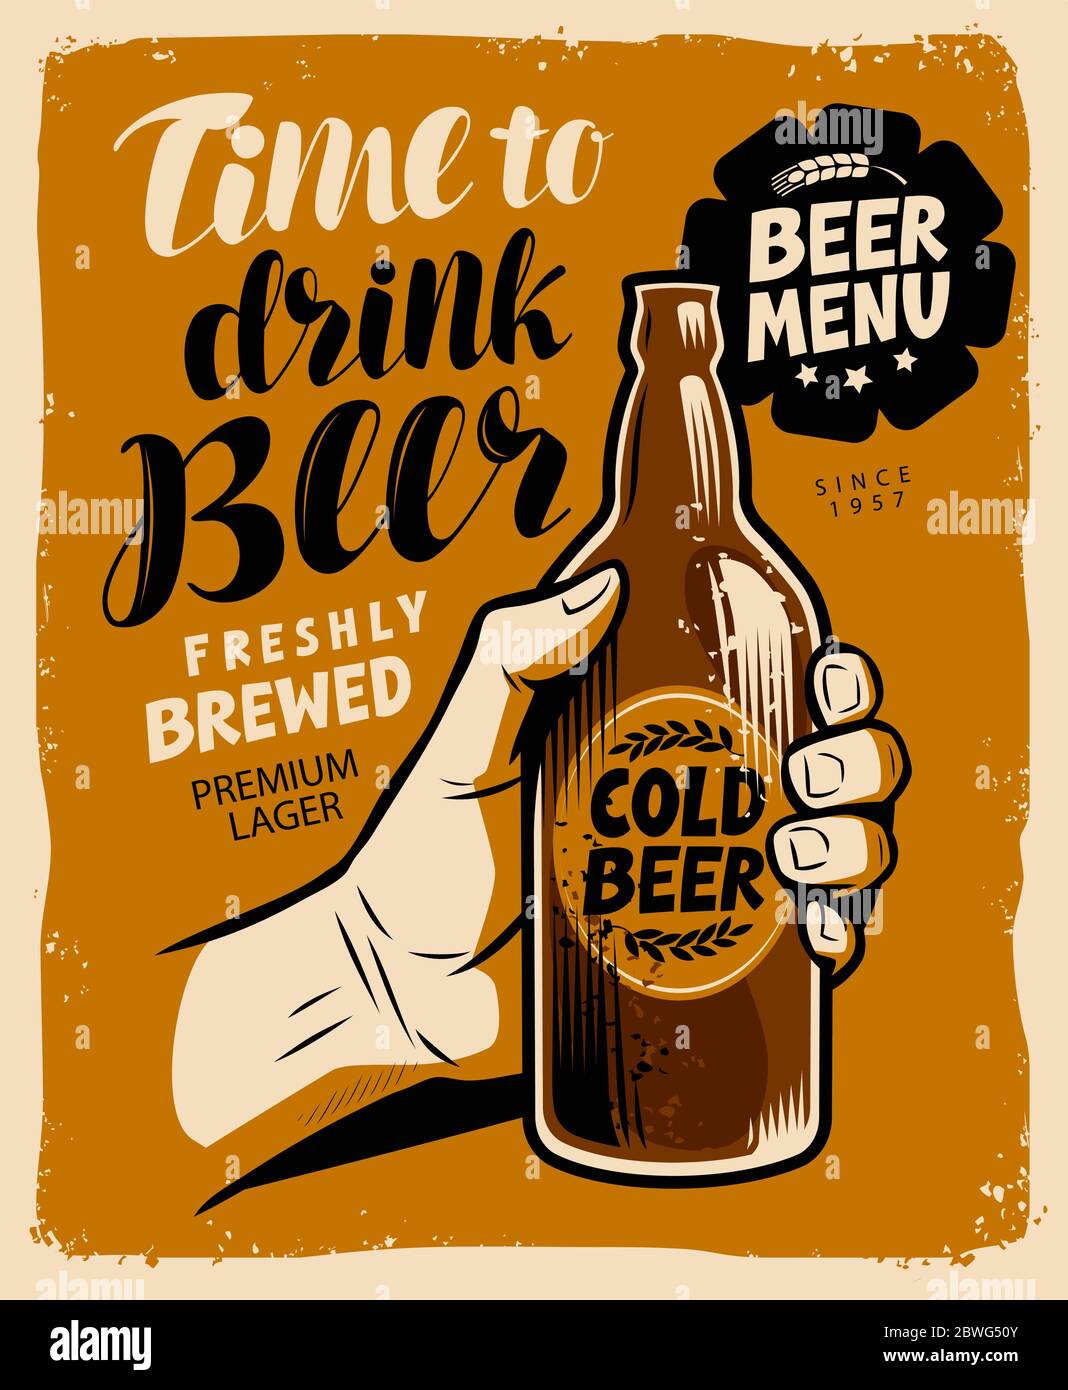 Poster beer immagini e fotografie stock ad alta risoluzione - Alamy